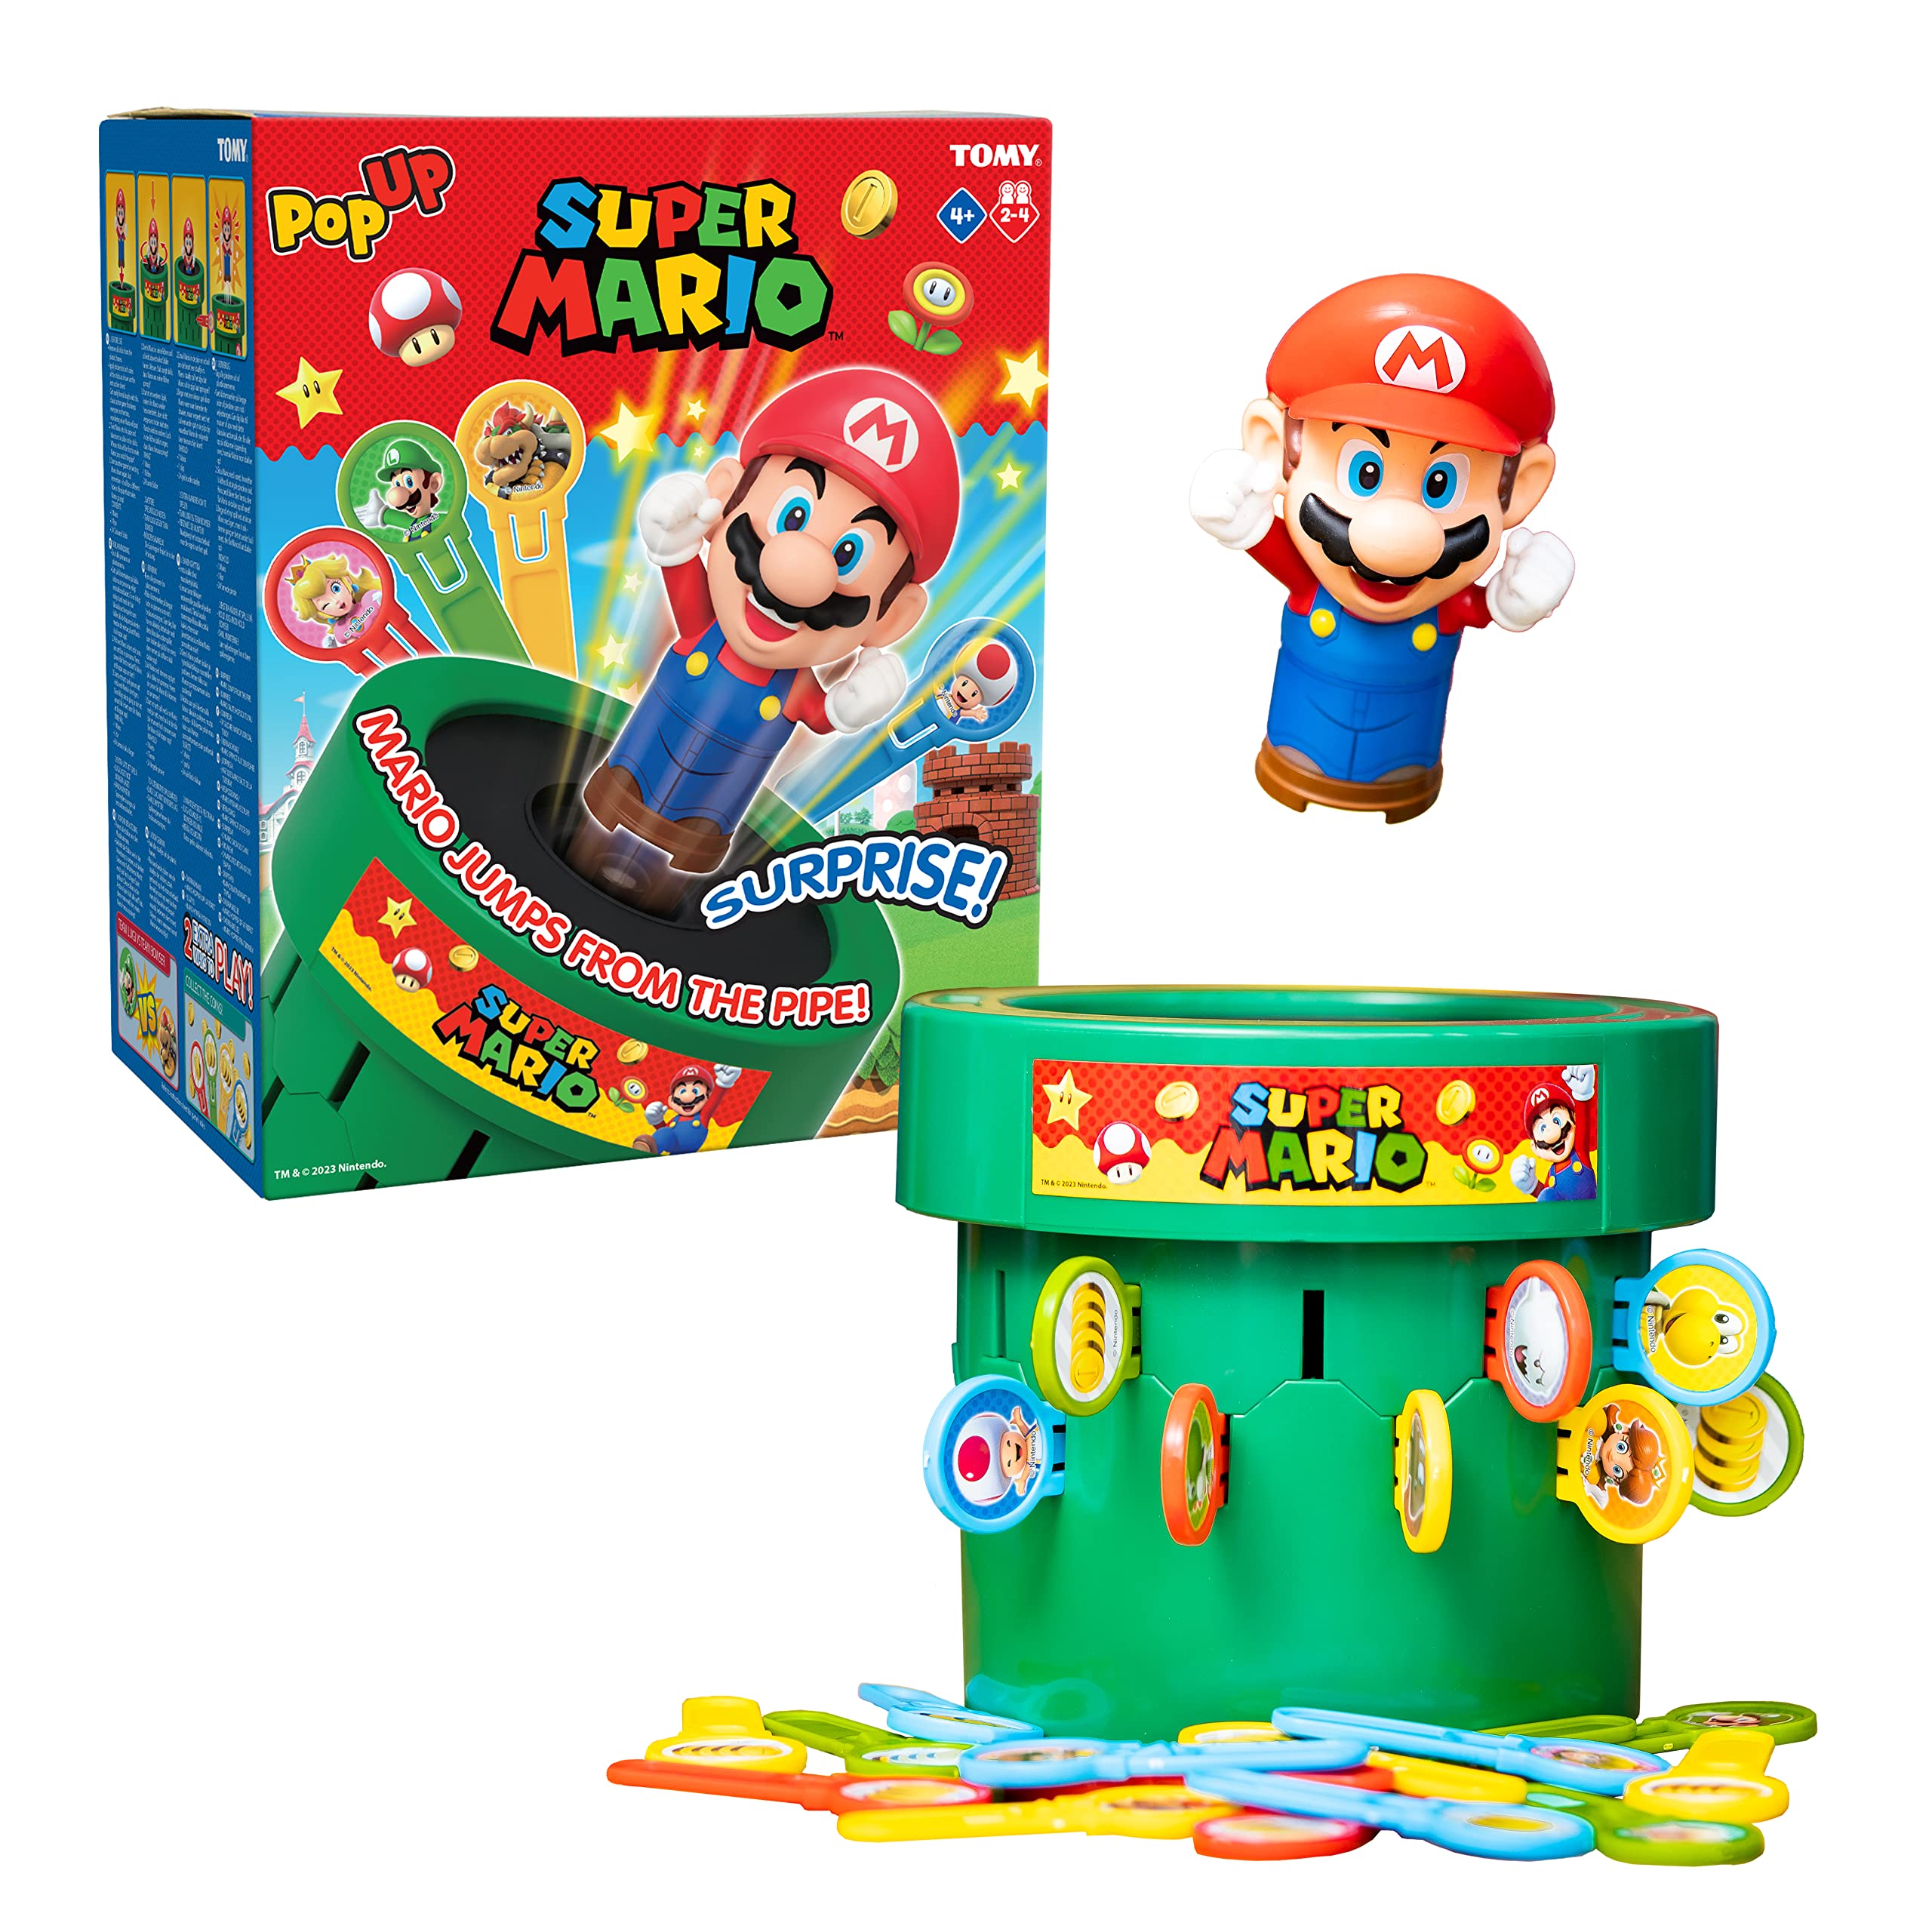 Super Mario Bros Pop Up Game (C3)